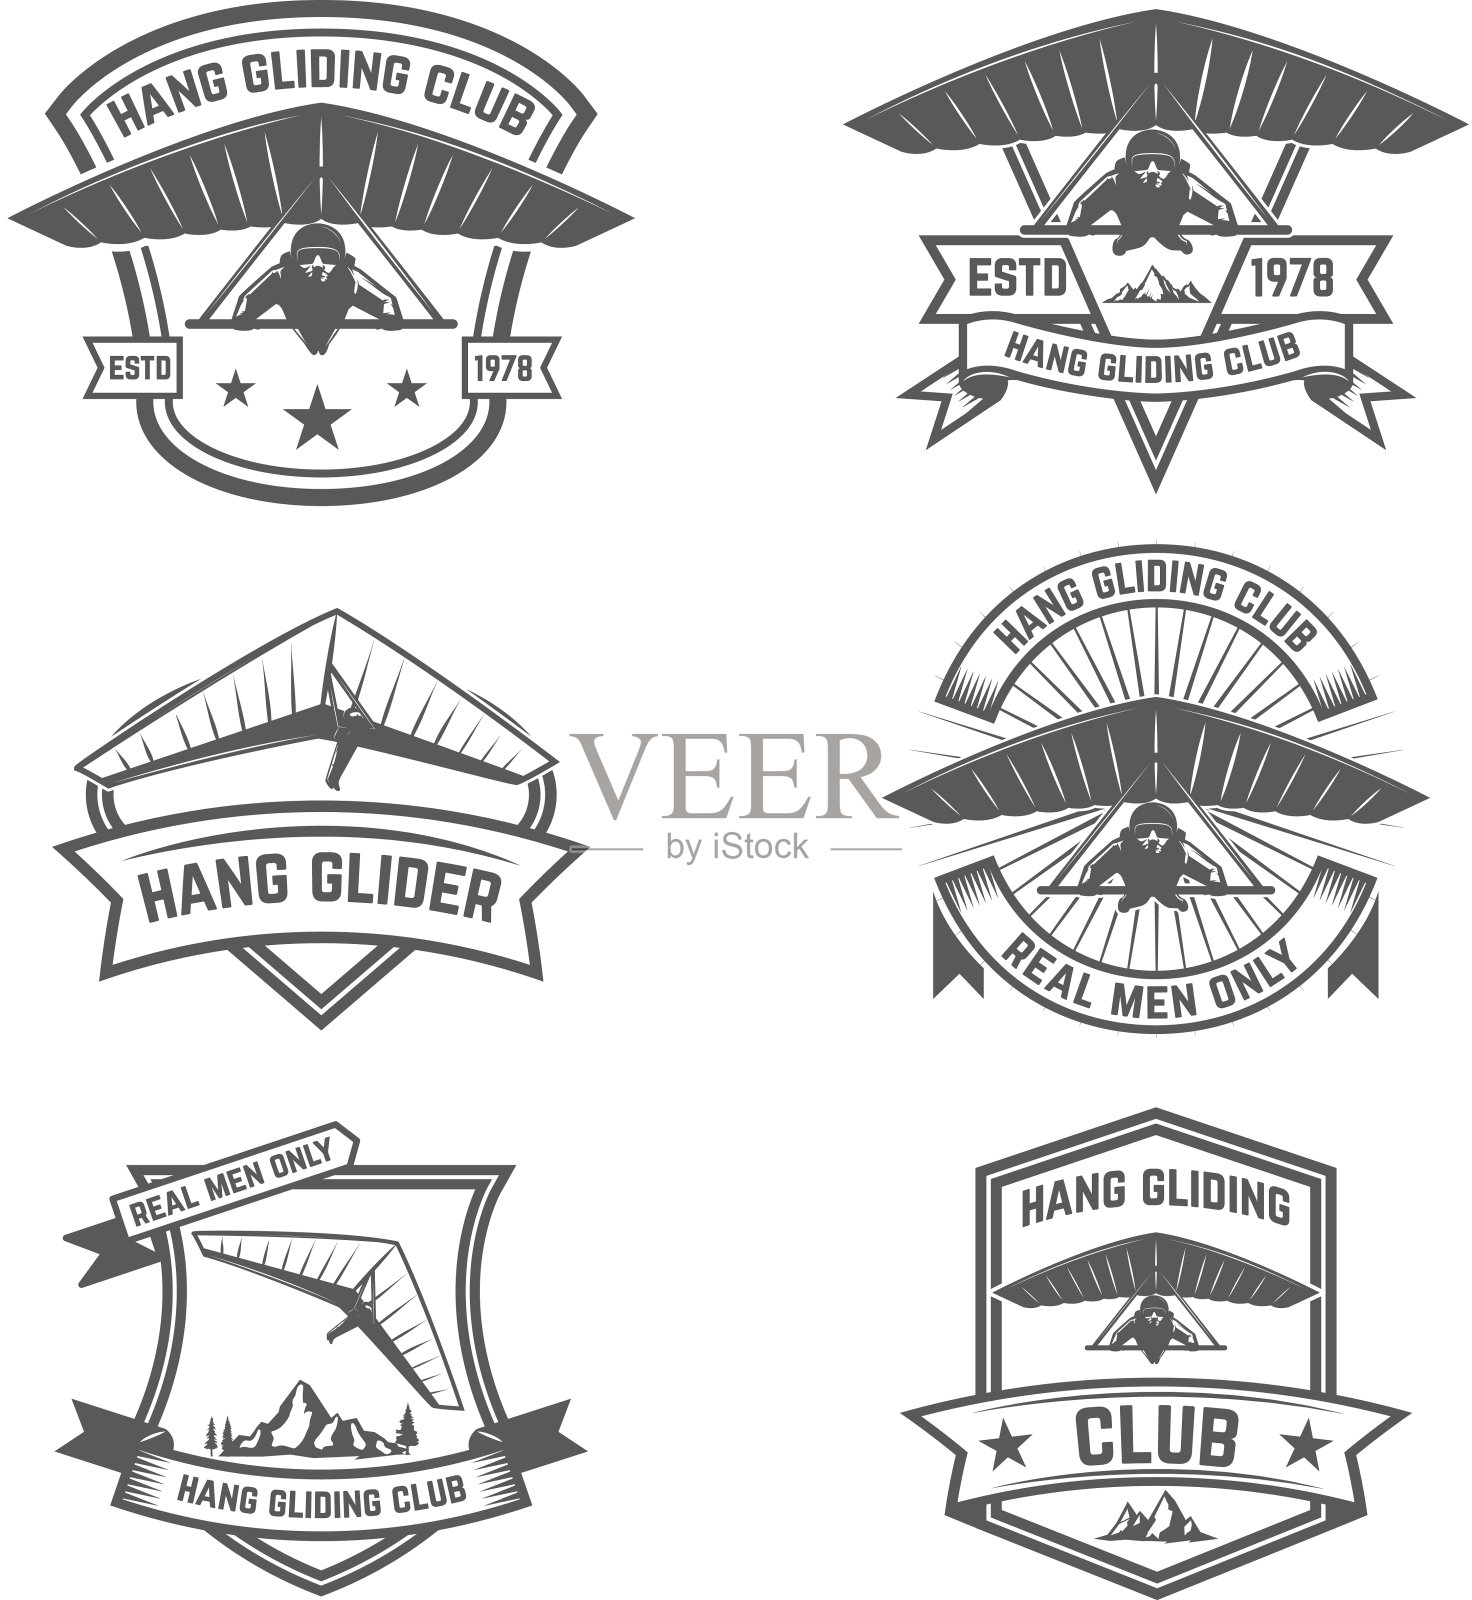 悬挂滑翔俱乐部的标志。设计元素的标签，徽章，标志。矢量图插画图片素材